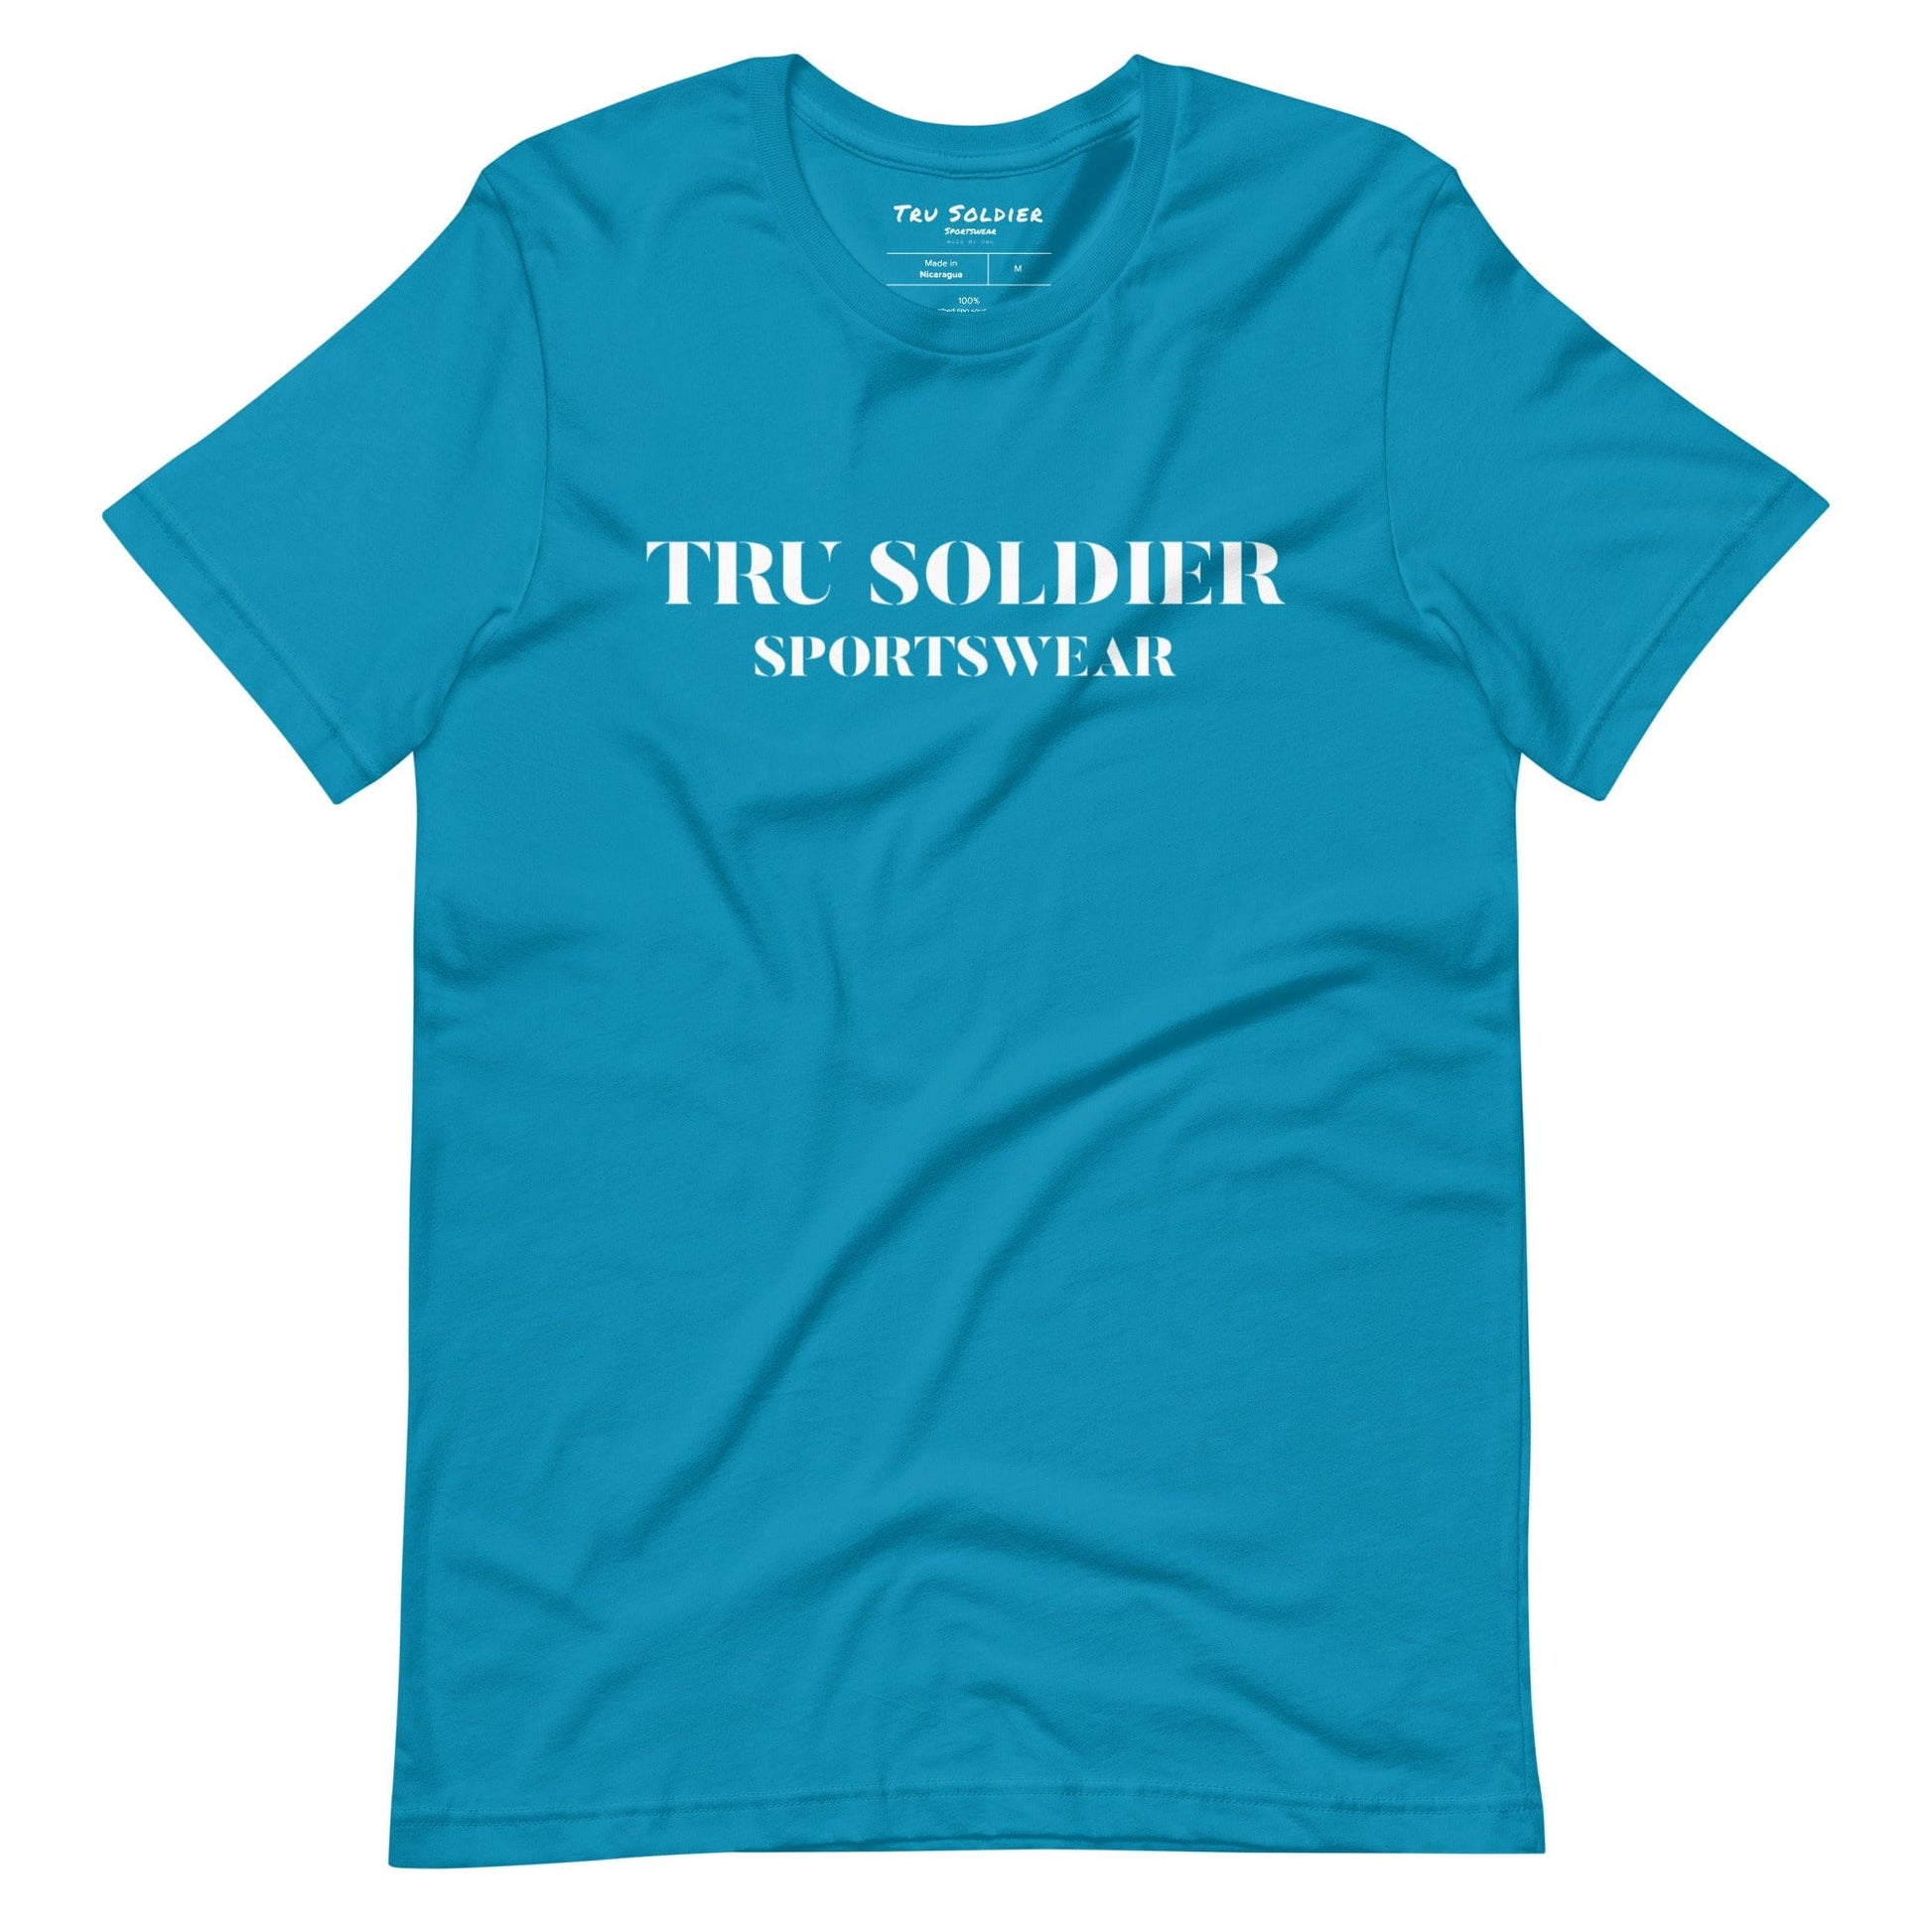 Tru Soldier Sportswear  Aqua / S Tru Soldier Sportswear t-shirt